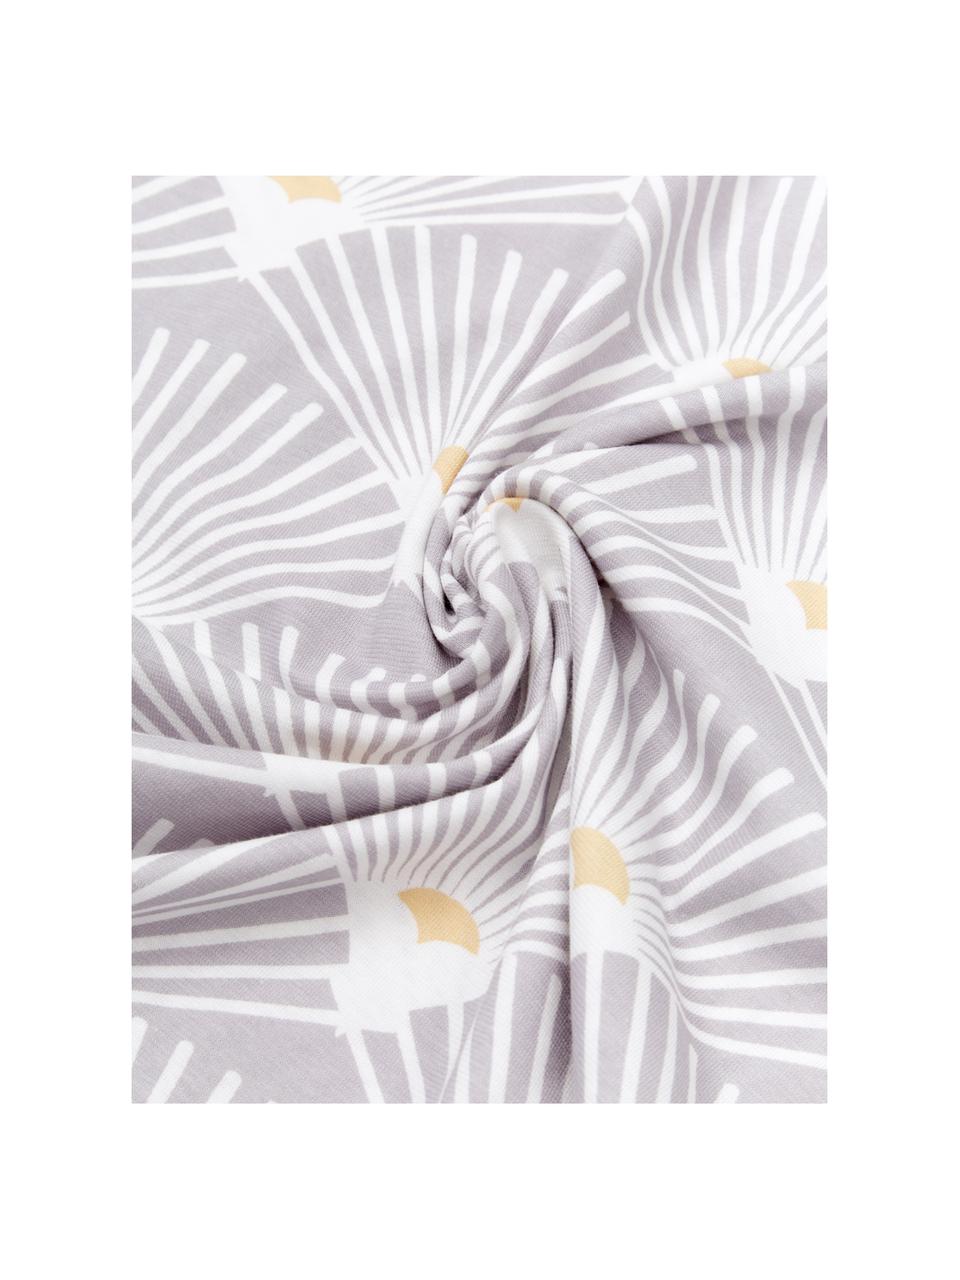 Jersey-Wendebettwäsche Ginkgo mit Muster, Webart: Jersey Jersey ist ein kli, Grau, Weiss, 135 x 200 cm + 1 Kissen 80 x 80 cm